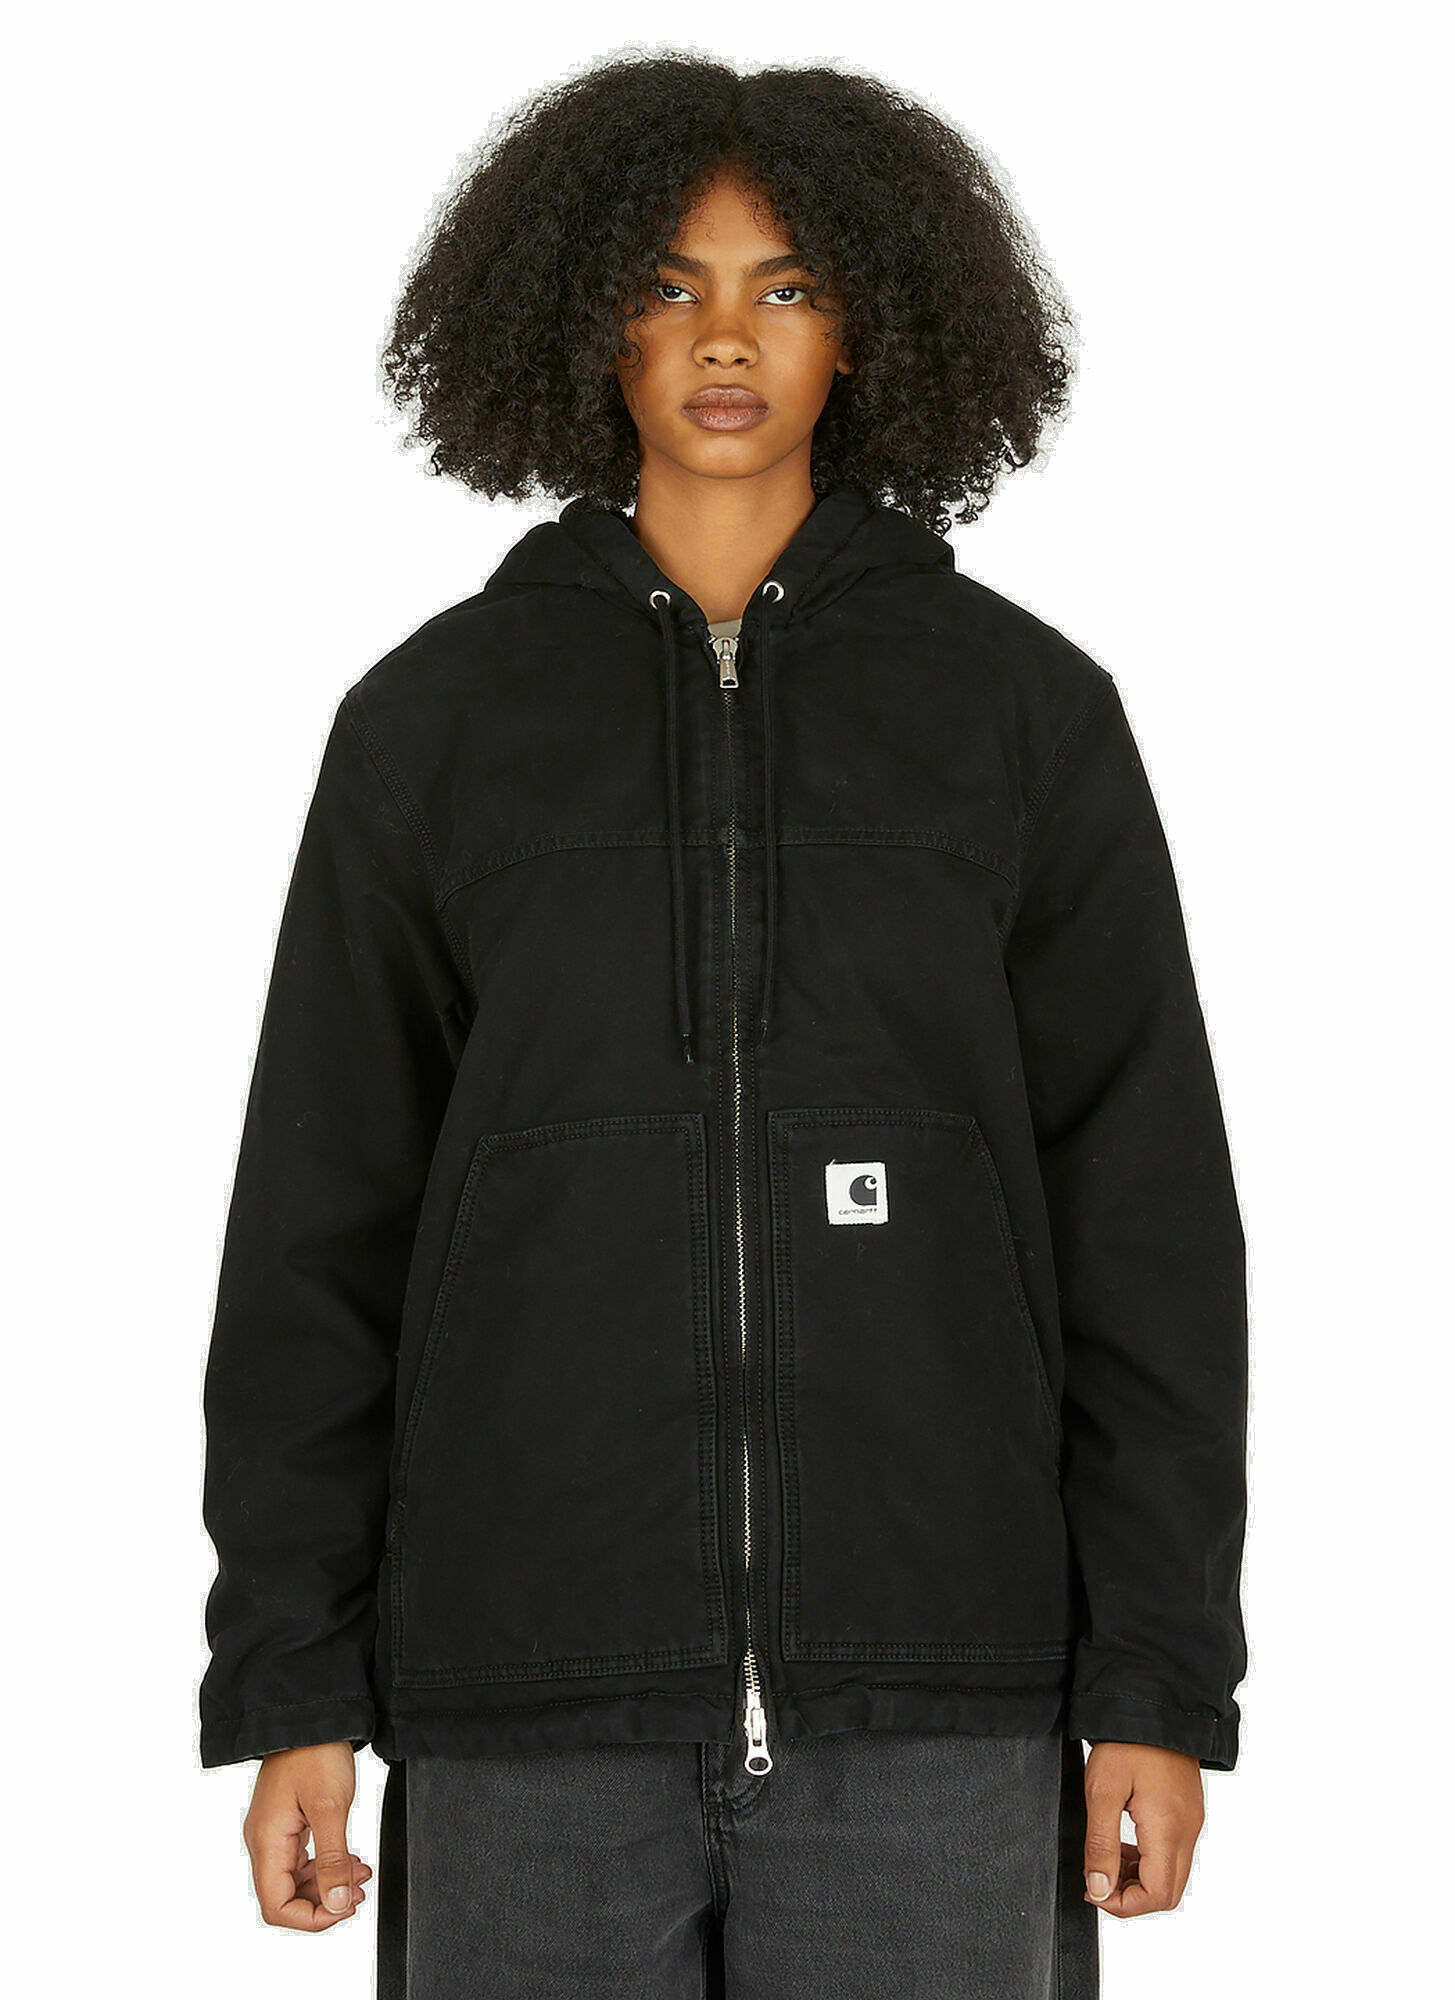 Arlington Hooded Jacket in Black Carhartt WIP